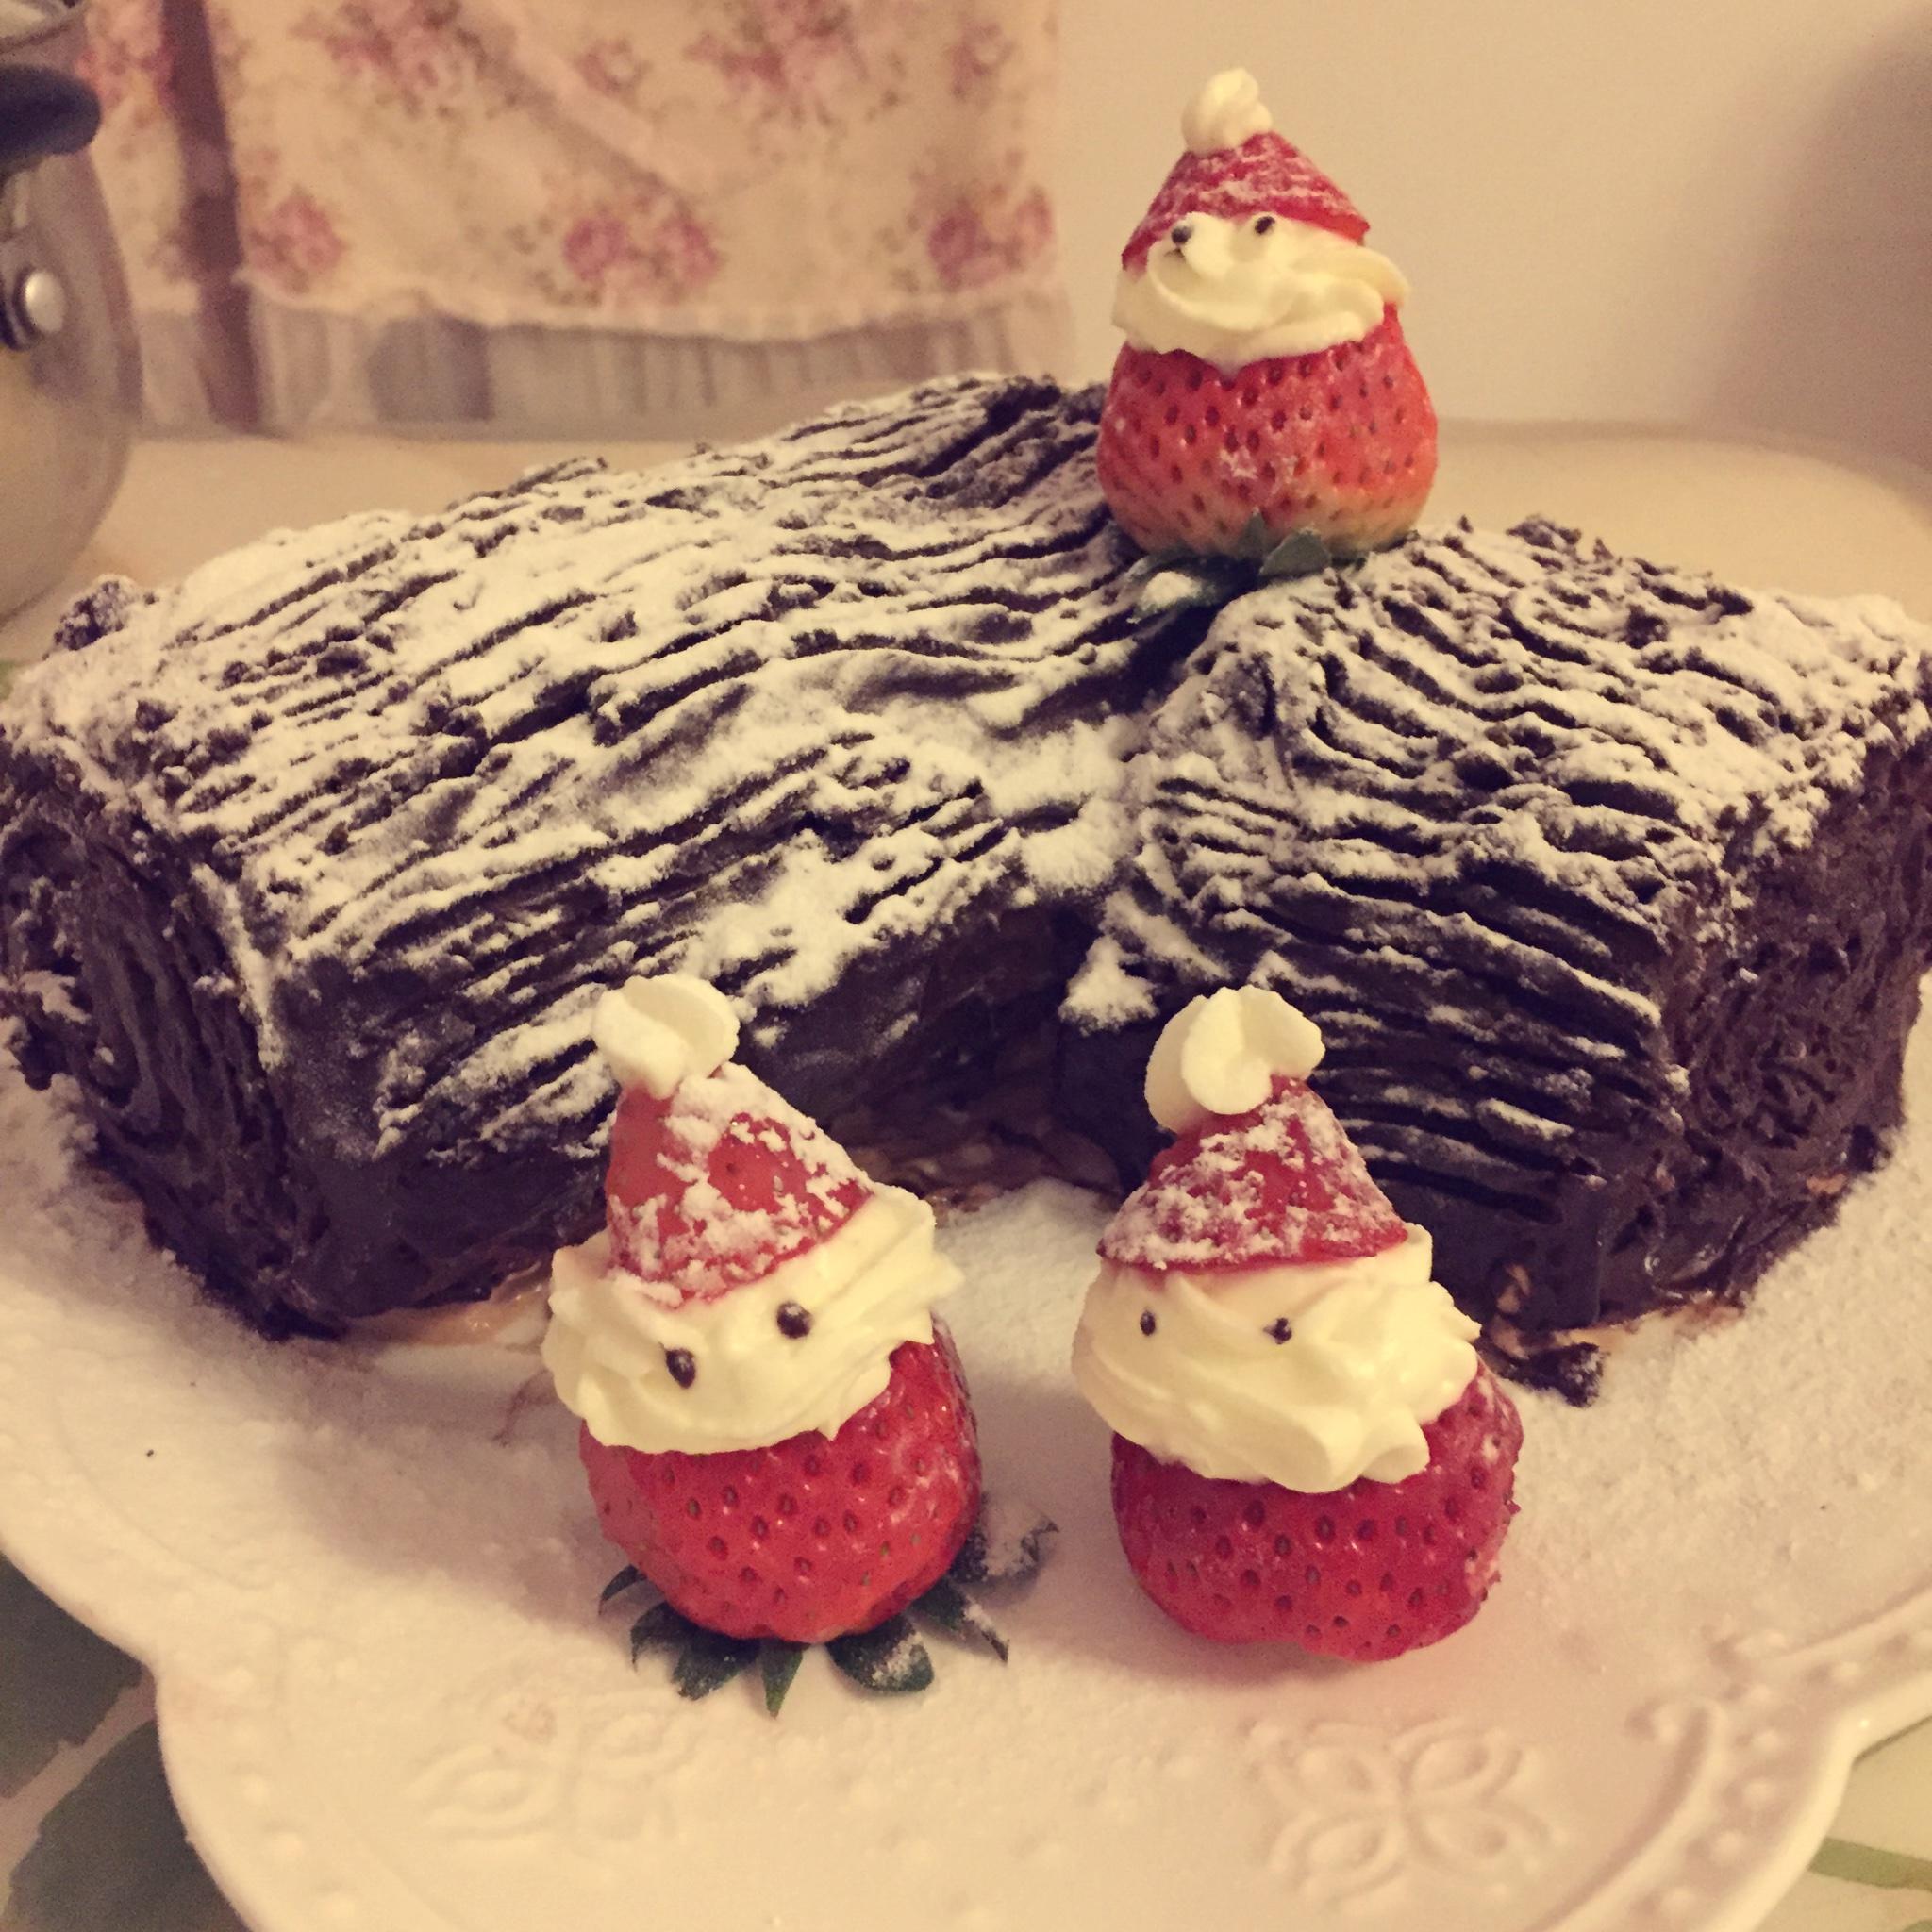 超好吃的圣诞节树干蛋糕叫树桩蛋糕也可哈